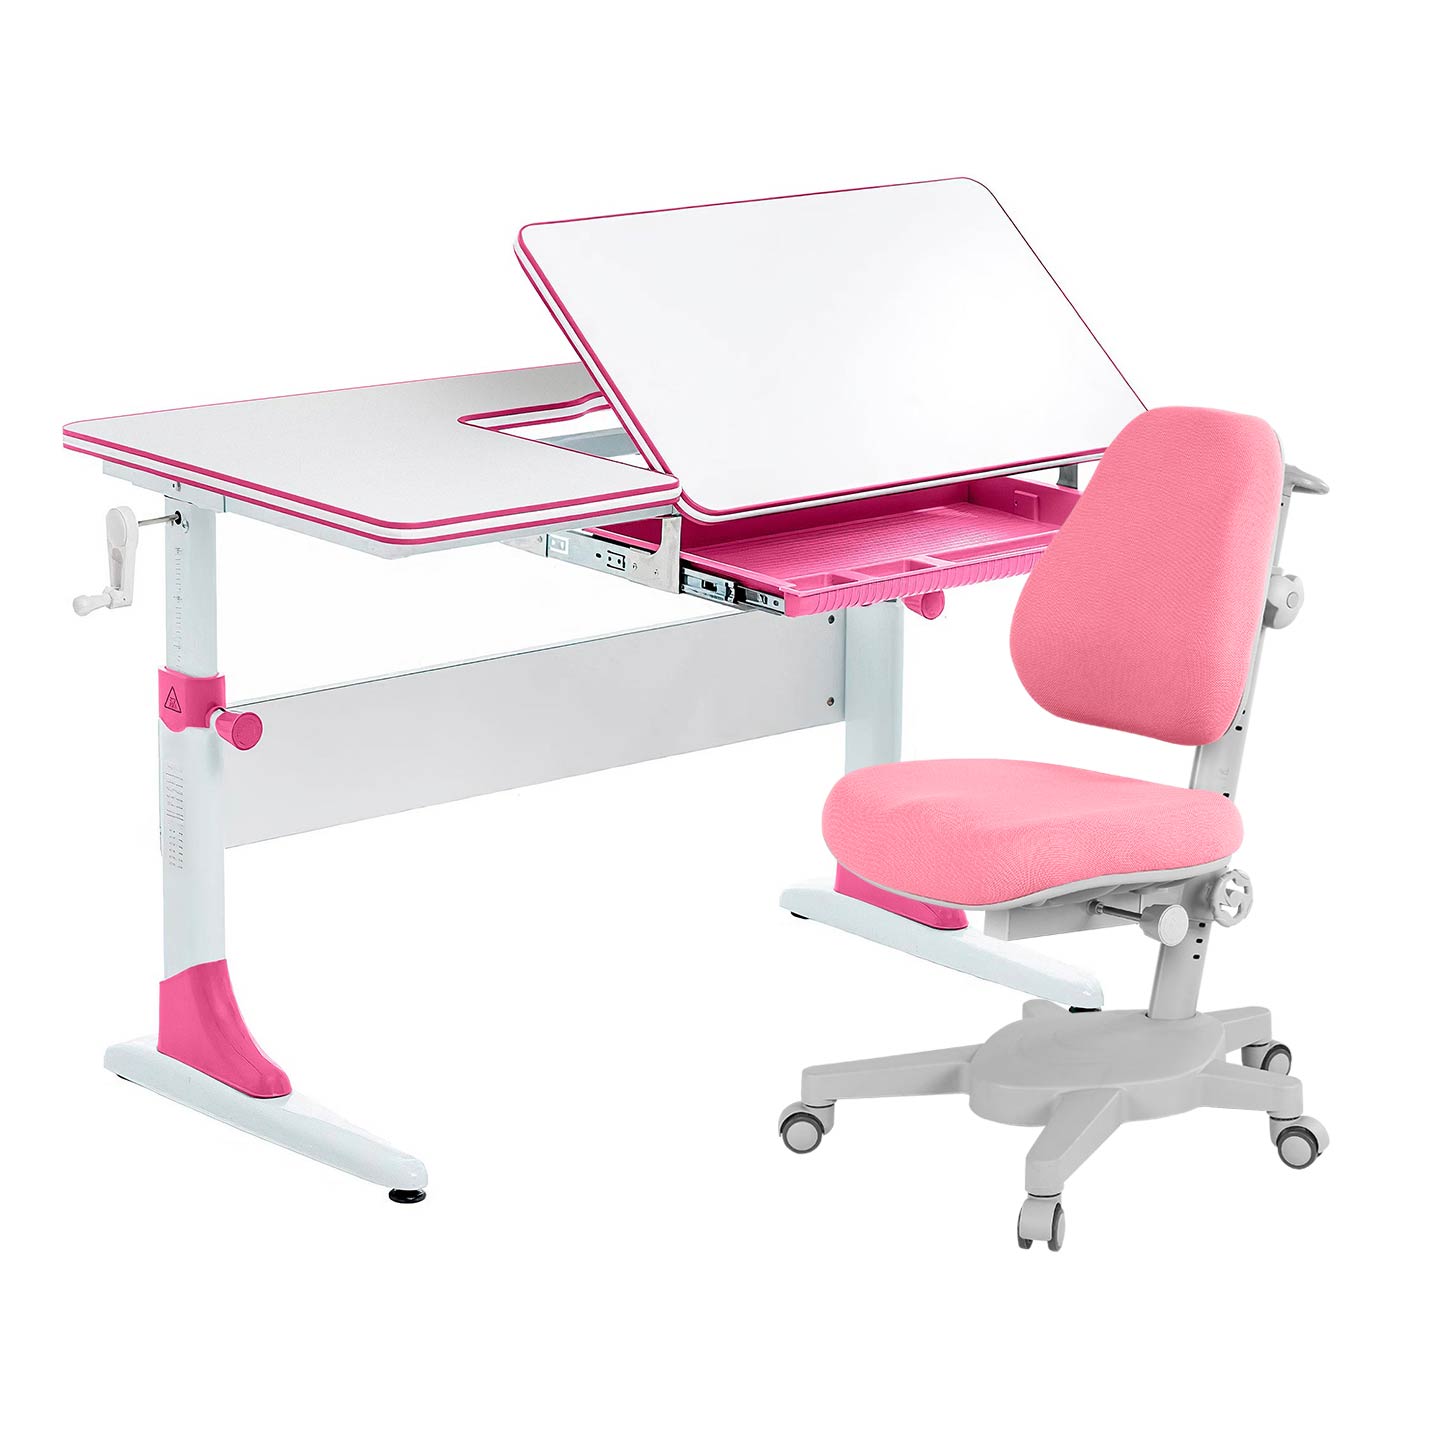 Комплект парта Anatomica Study-100 белый/розовый с розовым креслом Armata комплект anatomica парта genius белый розовый с розовым креслом figra